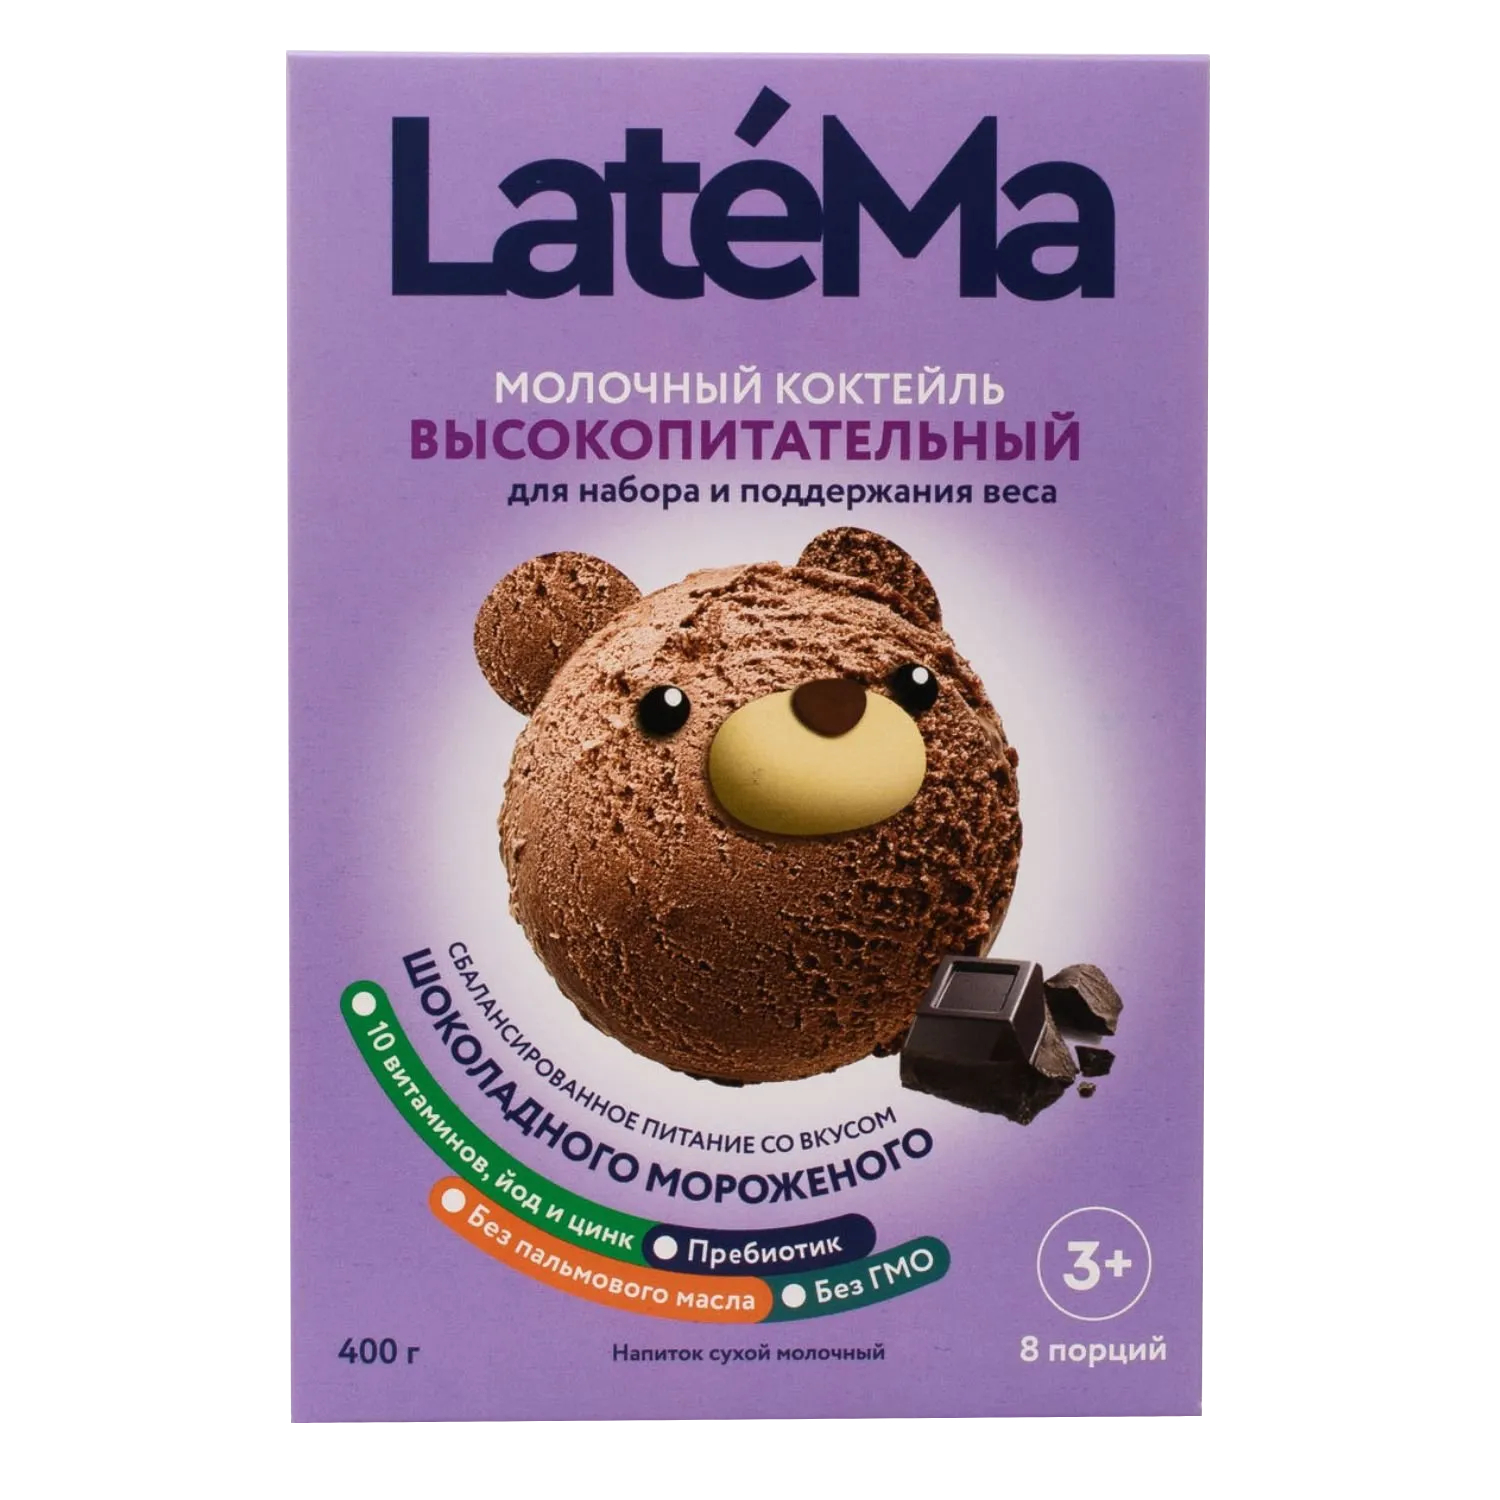 Смесь молочная сухая LateMa со вкусом шоколадного мороженого, 400 г молочная смесь для приготовления коктейля latema высокопитательная для набора и поддержания веса со вкусом бананового мороженого